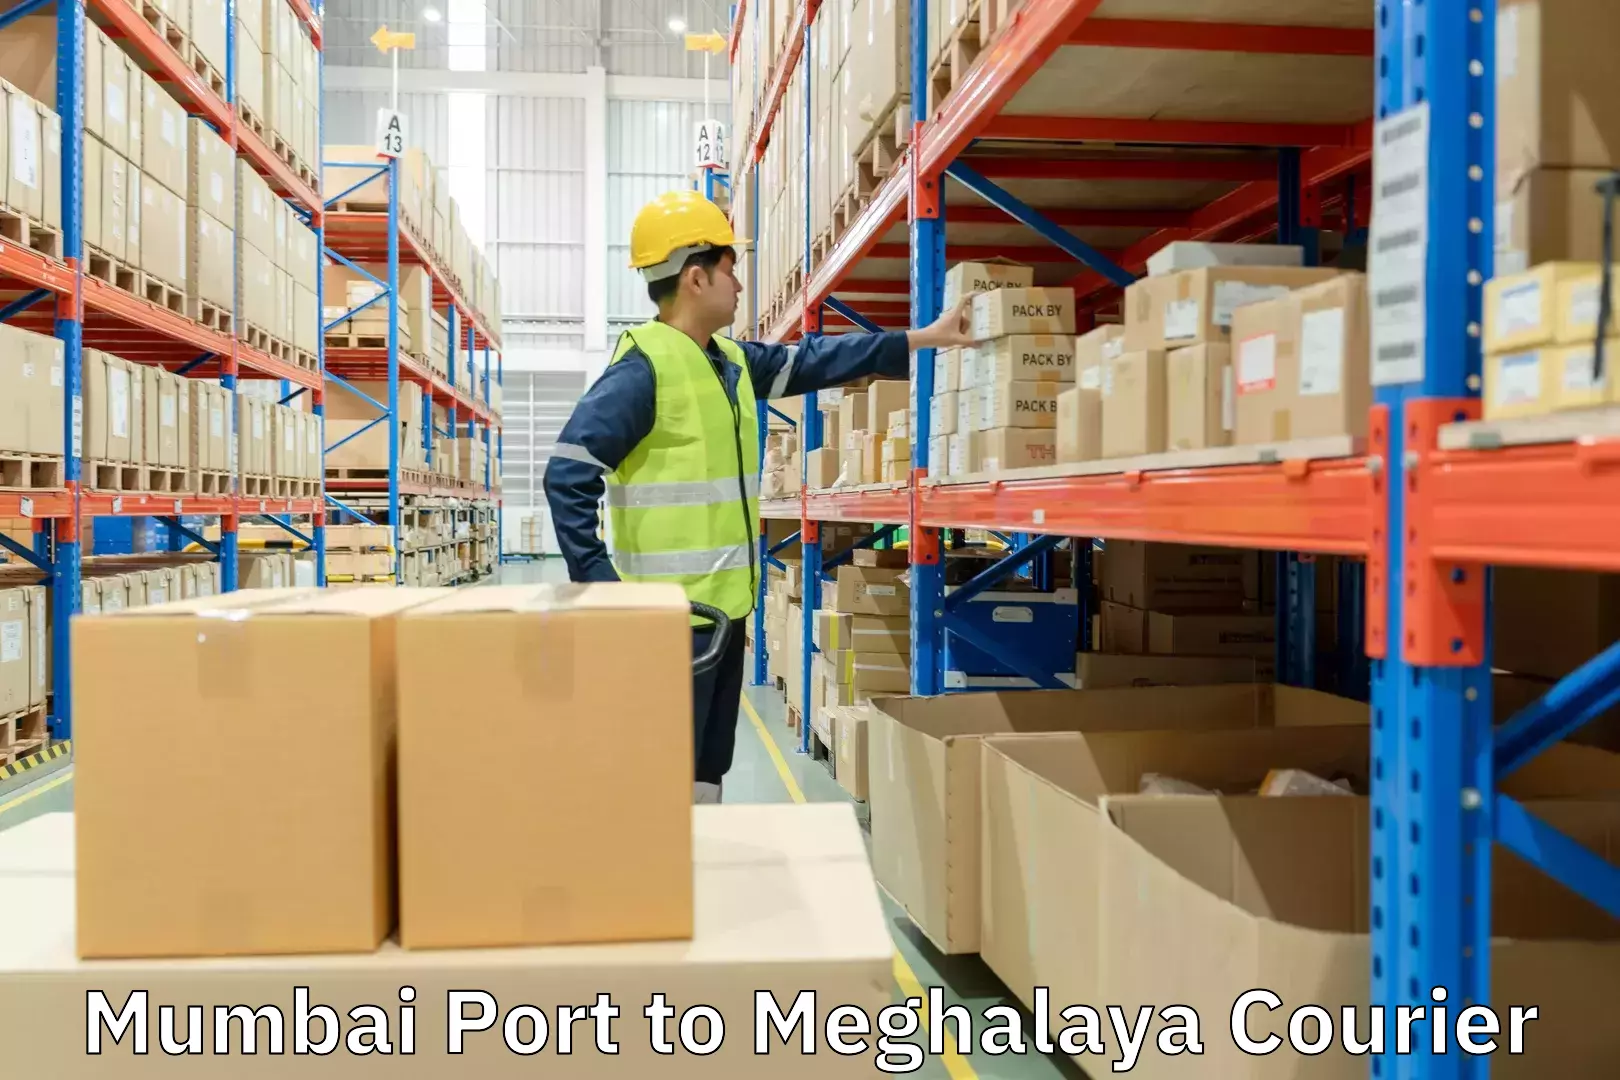 Expedited shipping methods Mumbai Port to Meghalaya